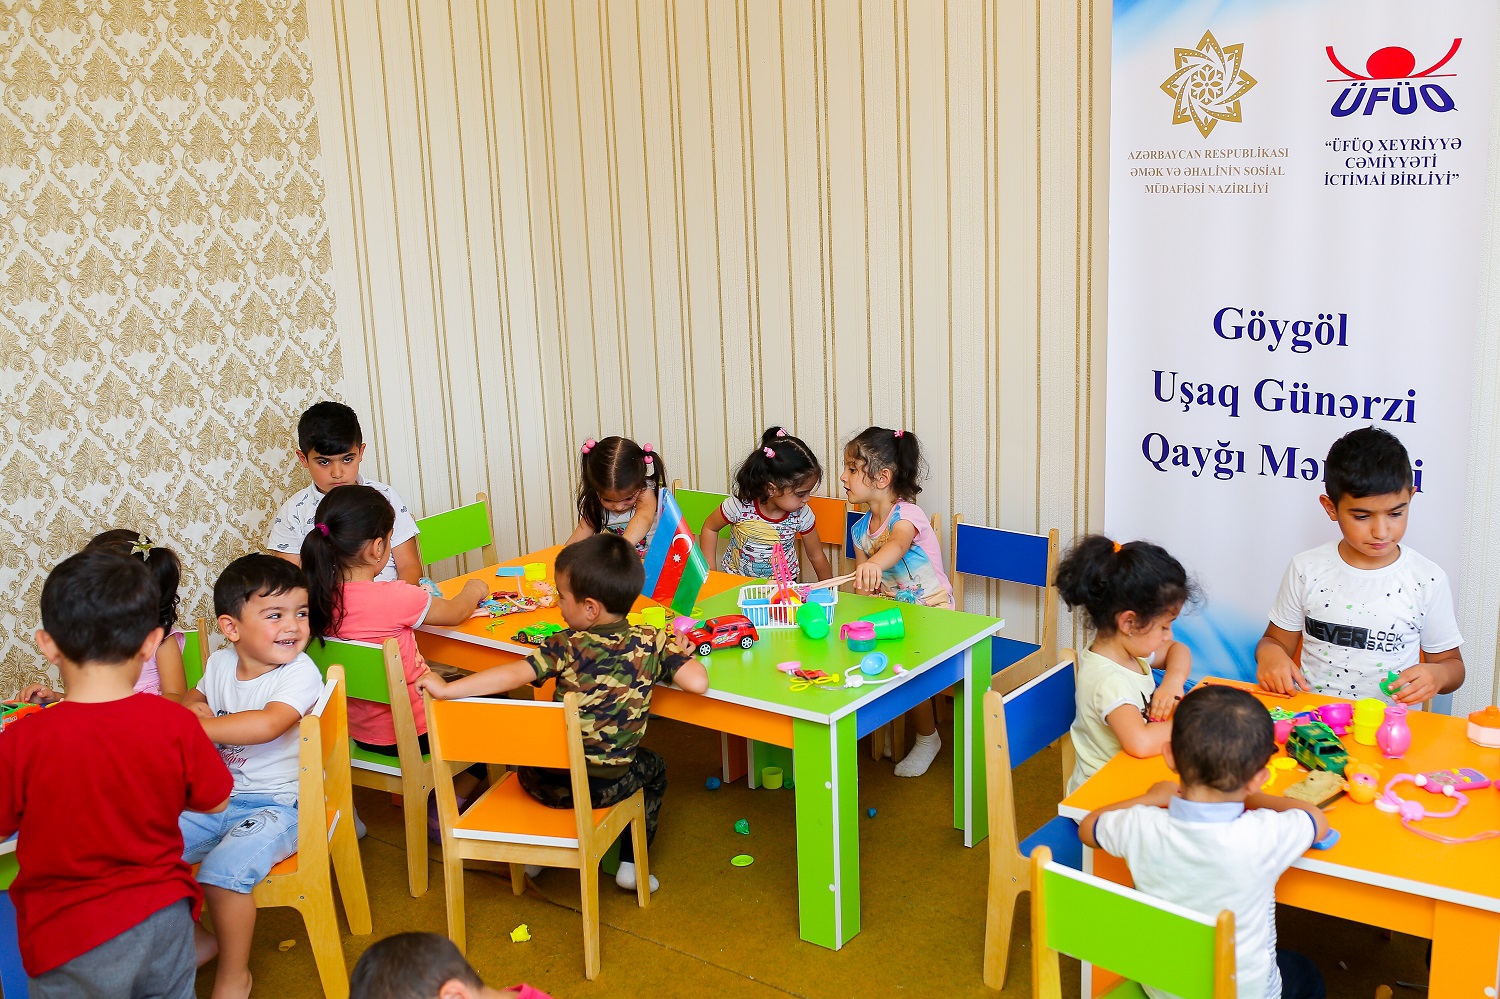 Göygöl rayonunda 30 uşaq günərzi xidmətlərlə əhatə olunub